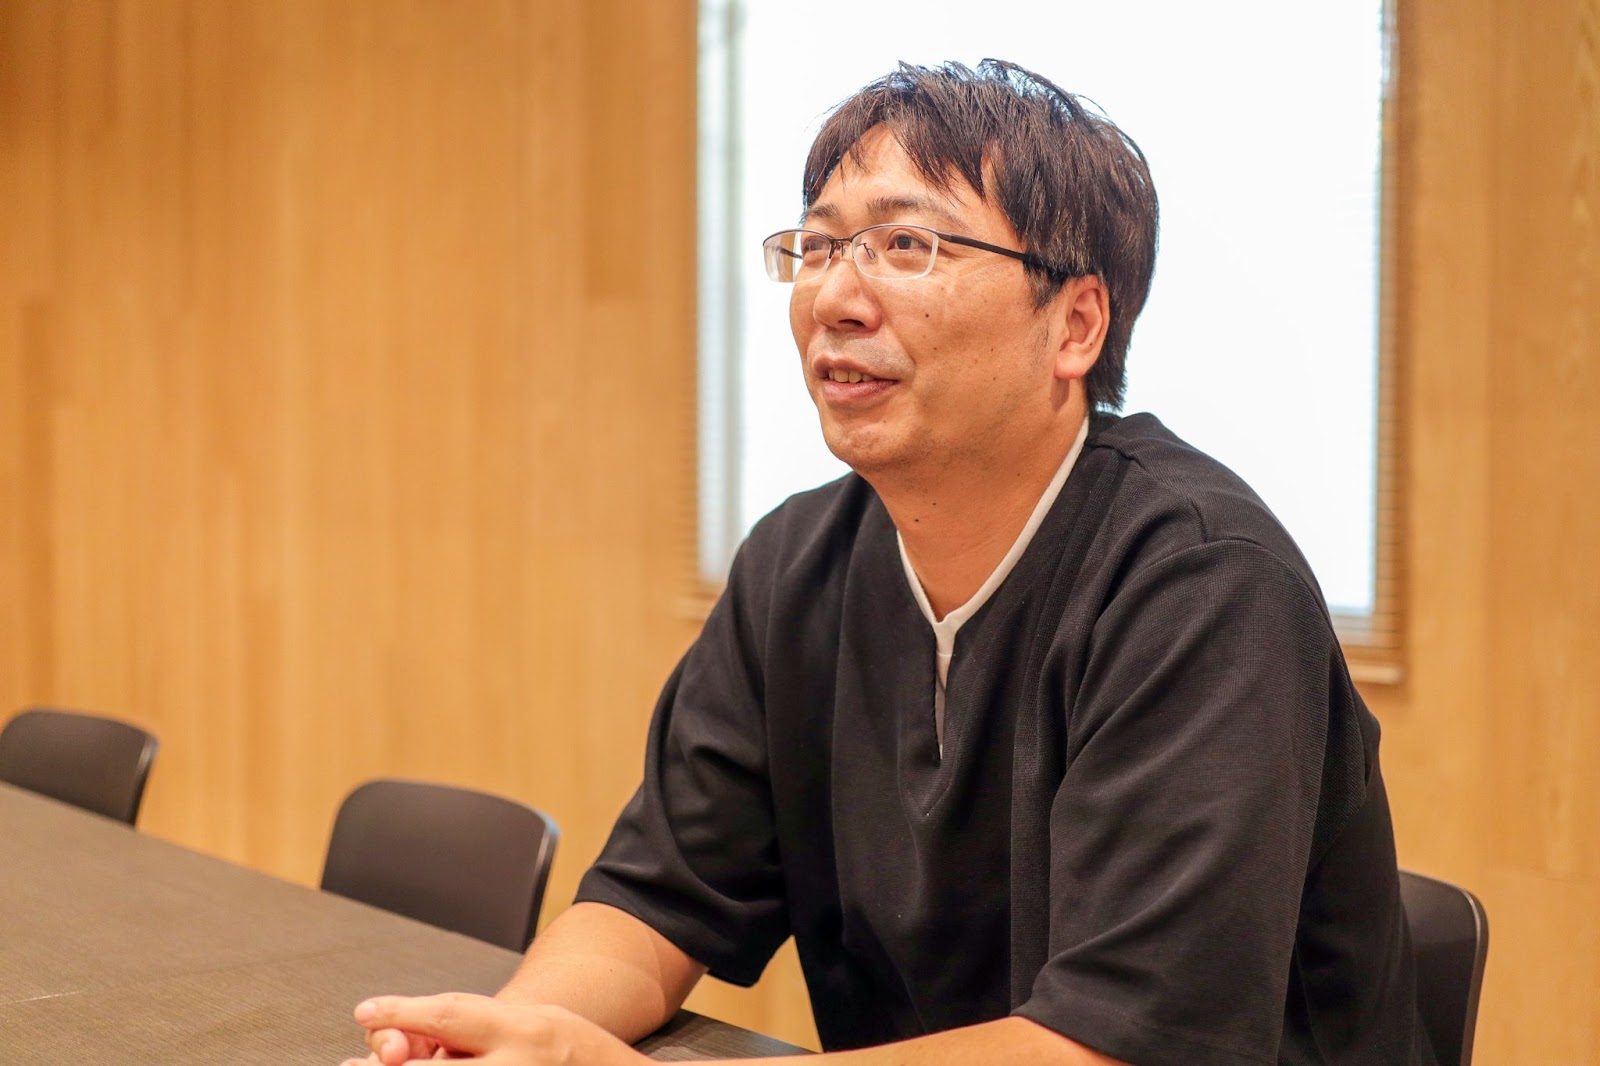 Meta事業本部の副事業本部長 兼 企画セクションリーダーの須田さん